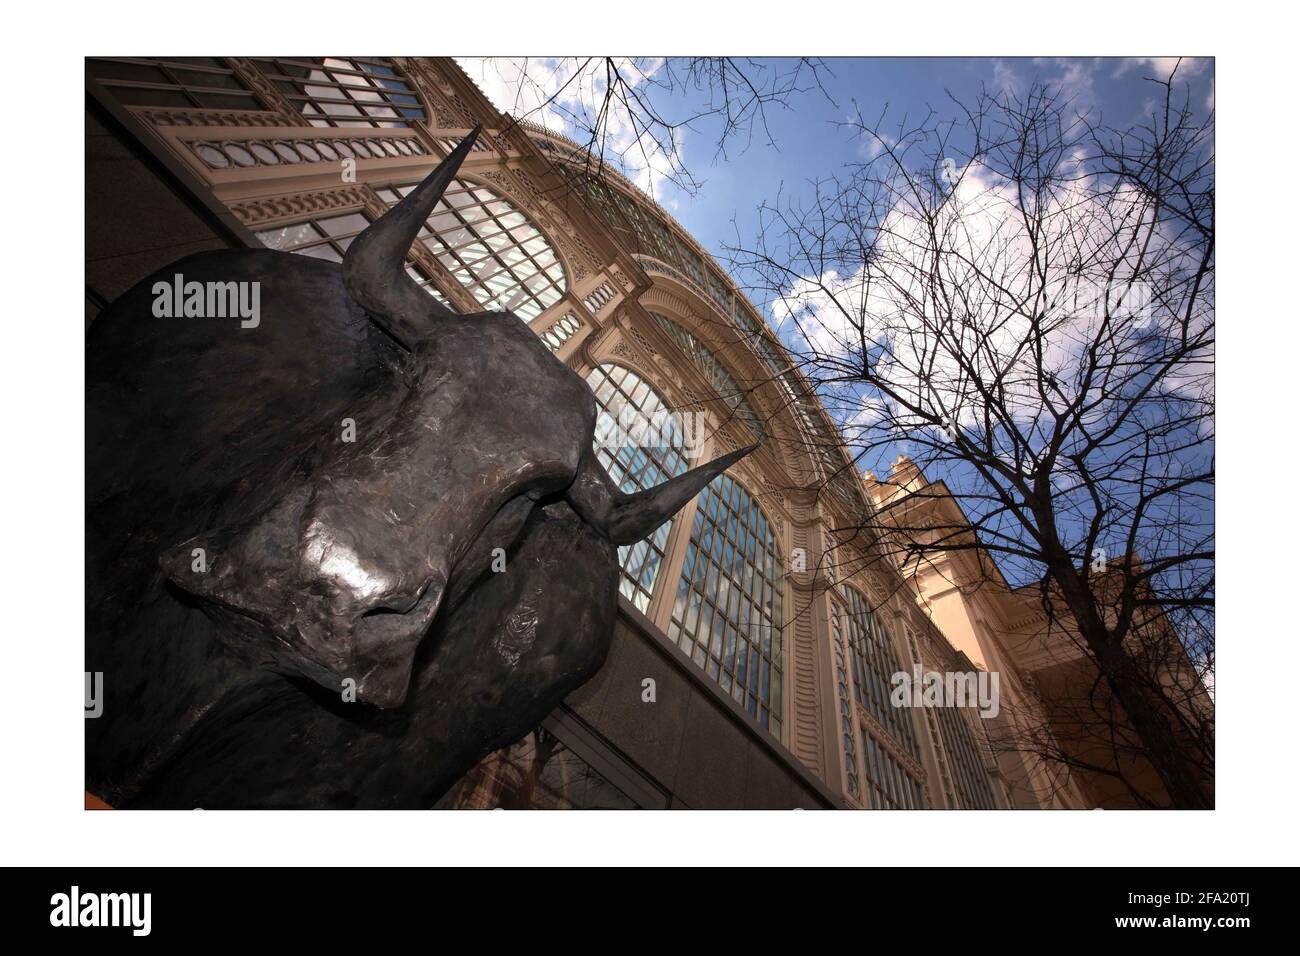 Una scultura di un minotauro a Covent Garden a Londra 8 aprile 2008. La scoperta della scultura è in coincidenza con l'ultima opera di Harrison Birtwistle, "The Minotaur". Fotografia di David Sandison the Independent Foto Stock